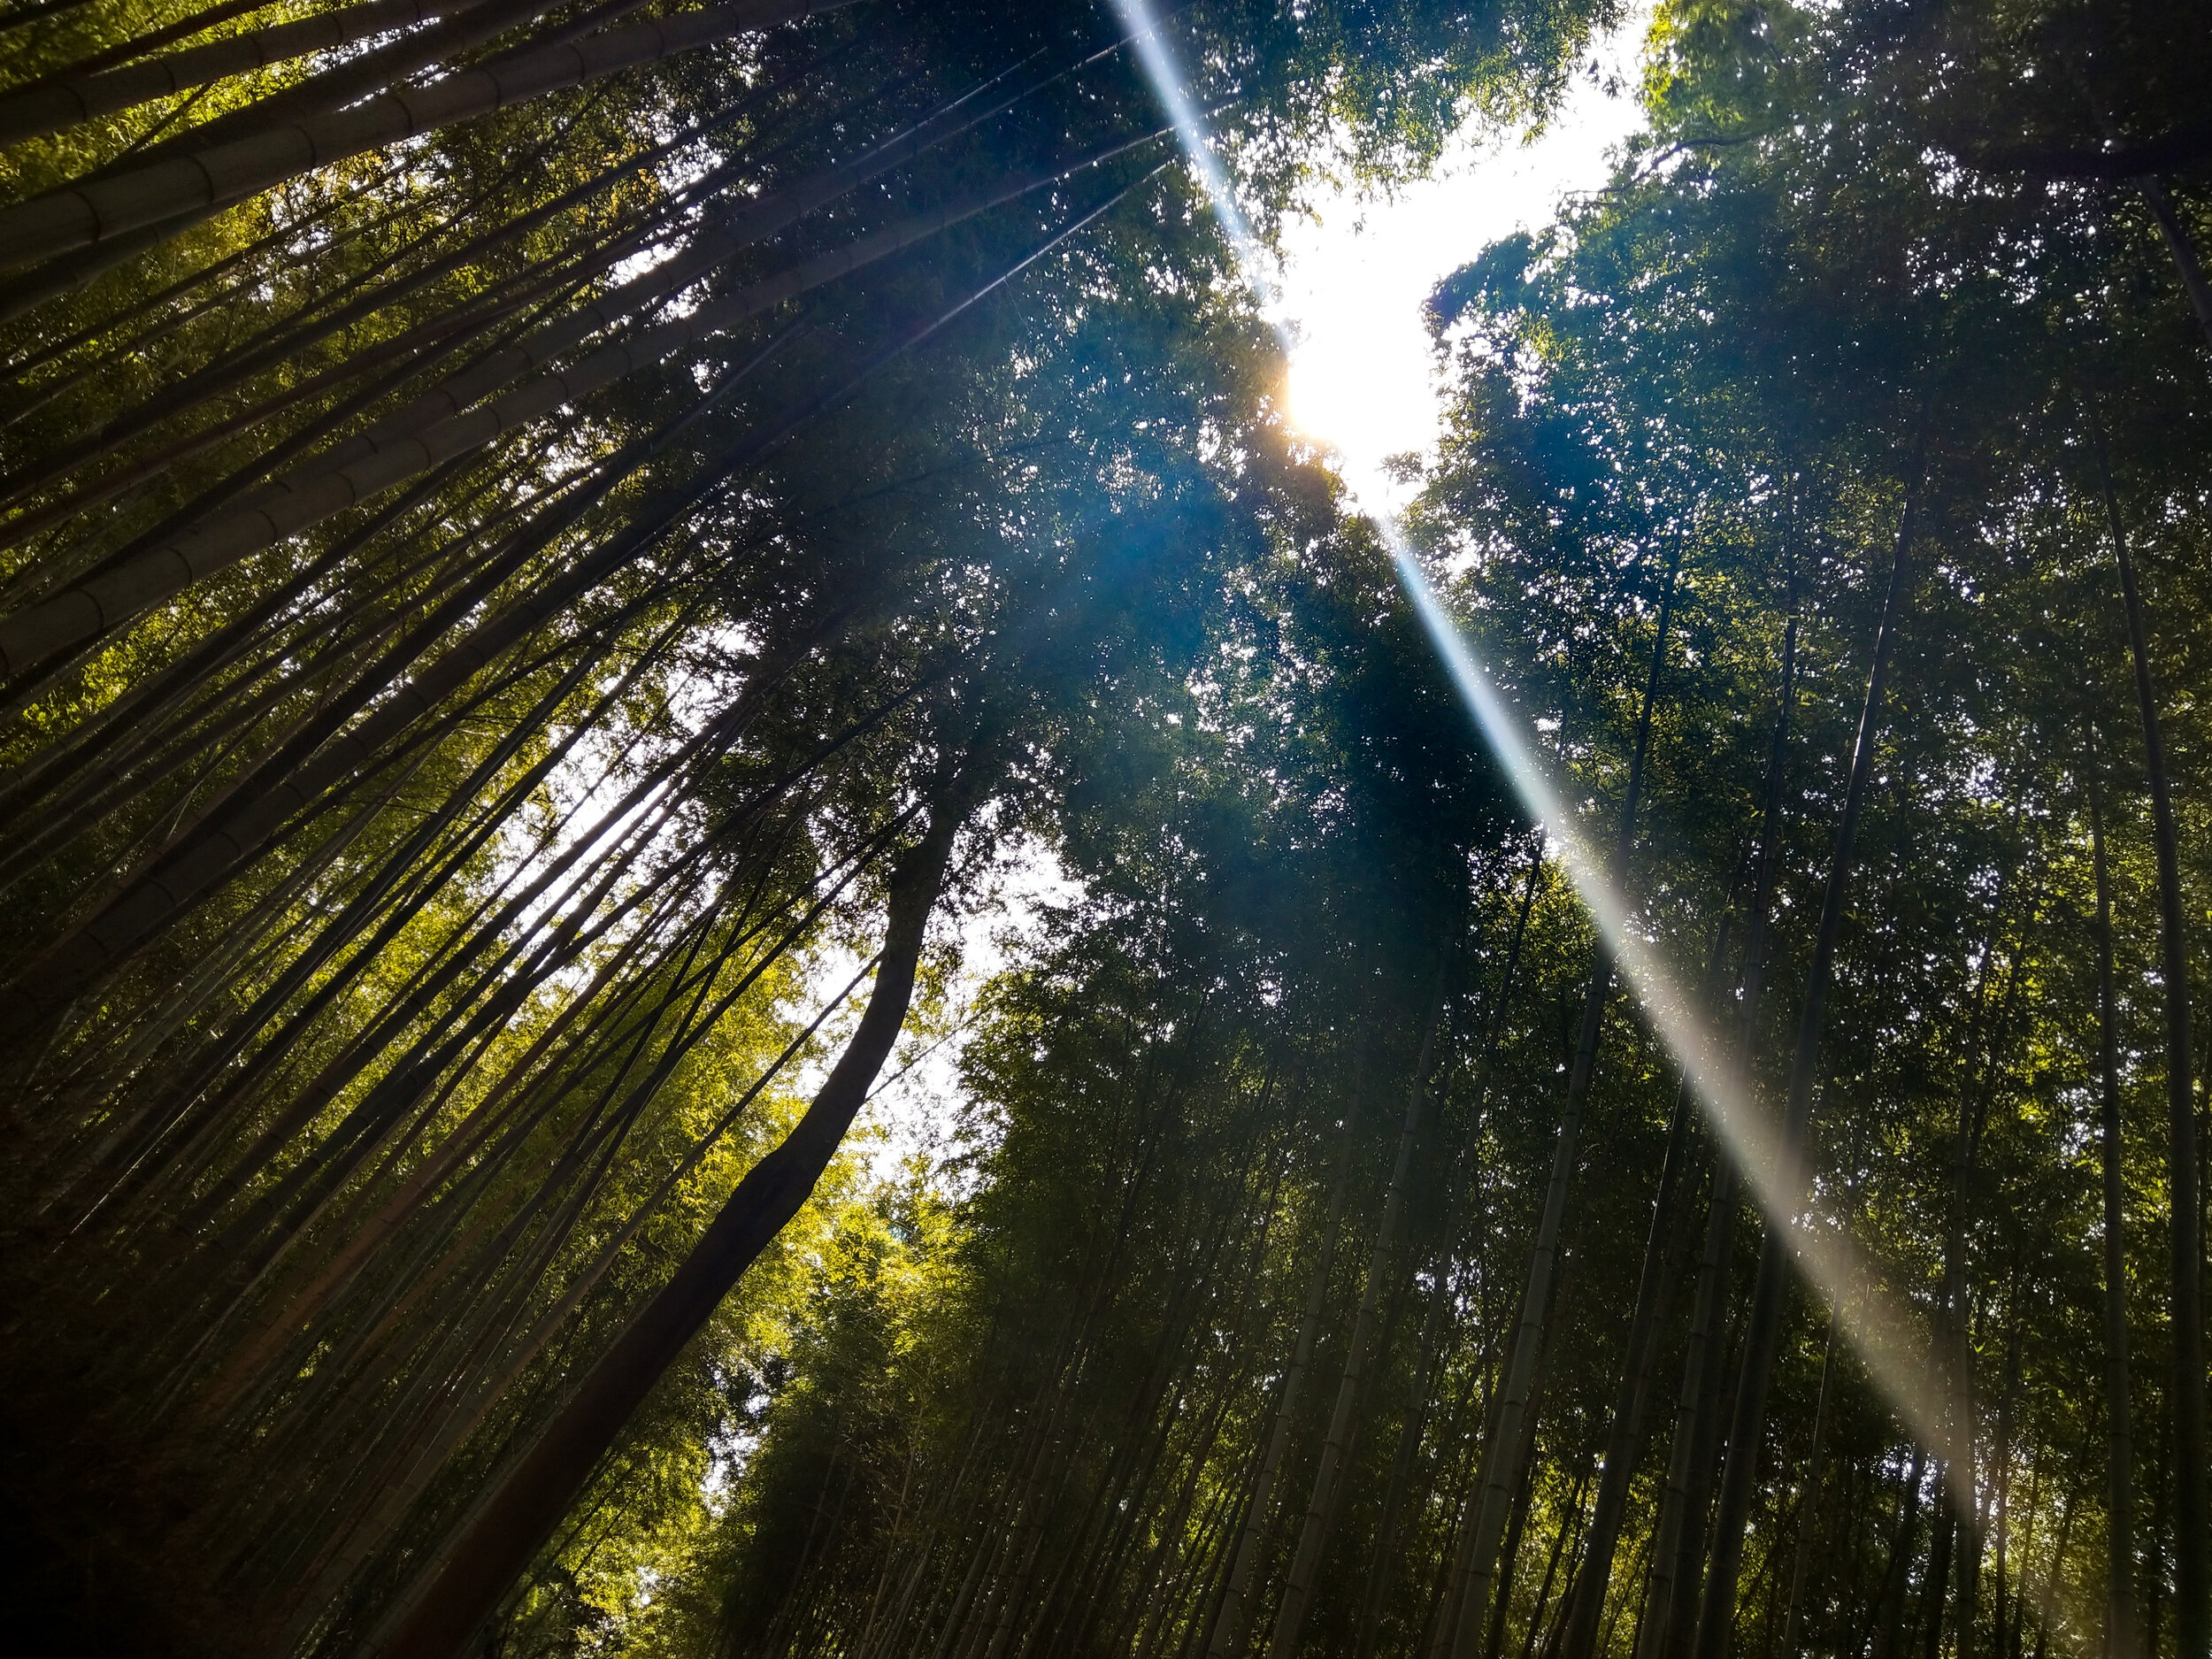 Bamboo Grove, Arashiyama, Japan 竹林の道, 嵐山, 日本